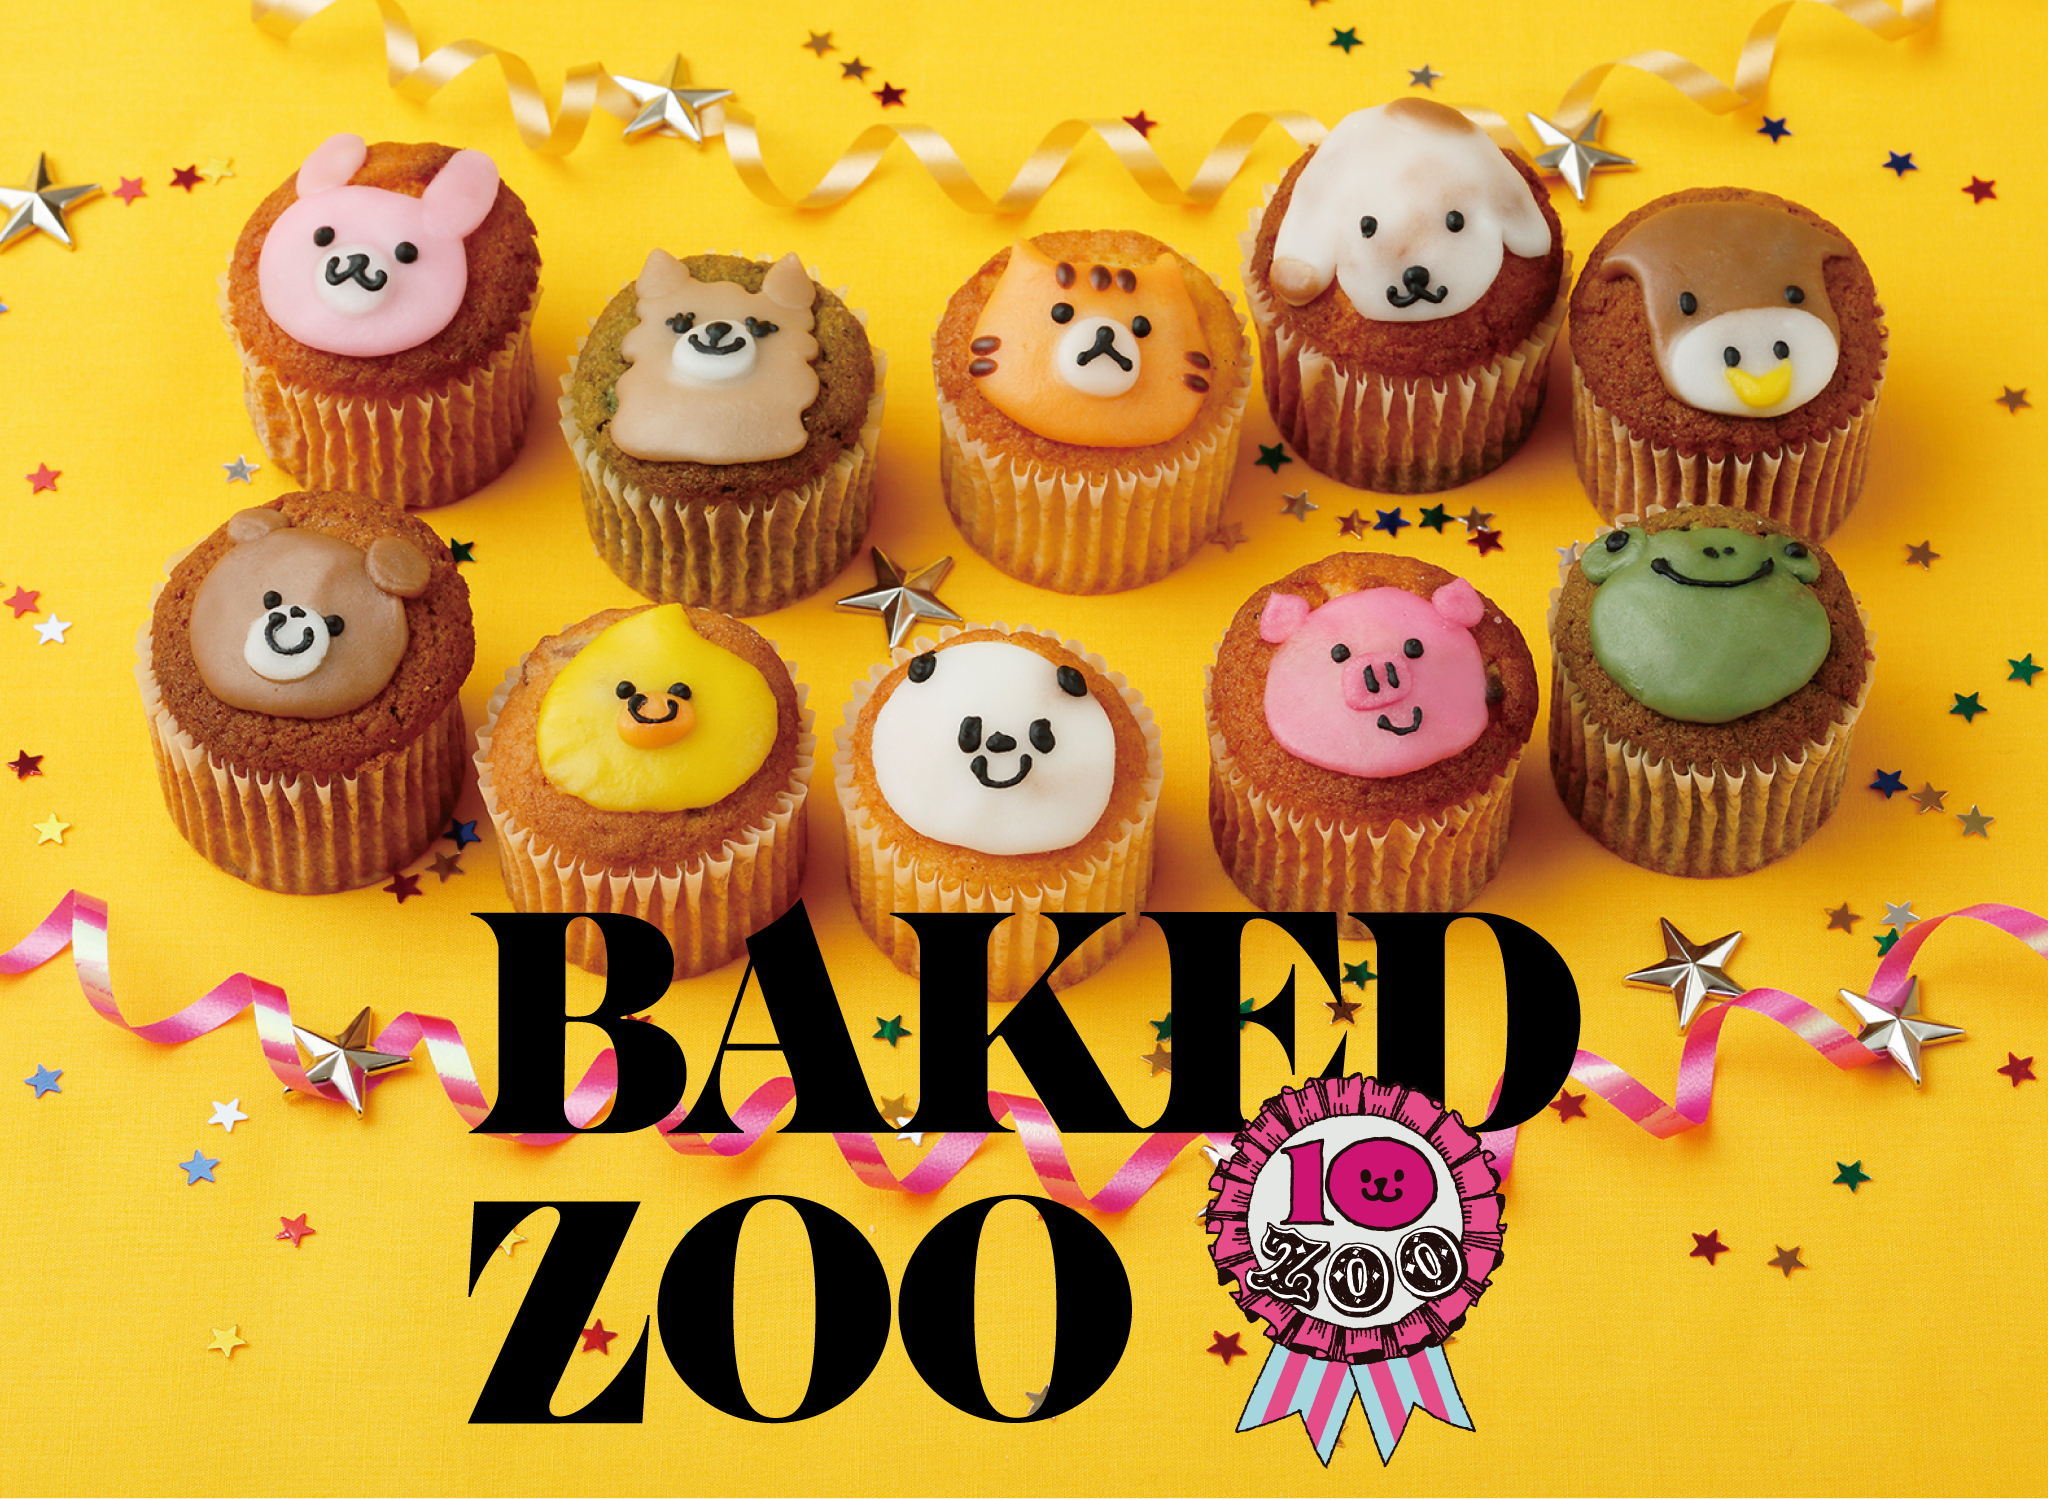 フェアリーケーキフェア 10周年アニバーサリーに10種のかわいい動物カップケーキ登場 これからも変わらず毎朝できたてのおいしさを東京駅でお 届け コンテンポラリープランニングセンター Cpcenter のプレスリリース